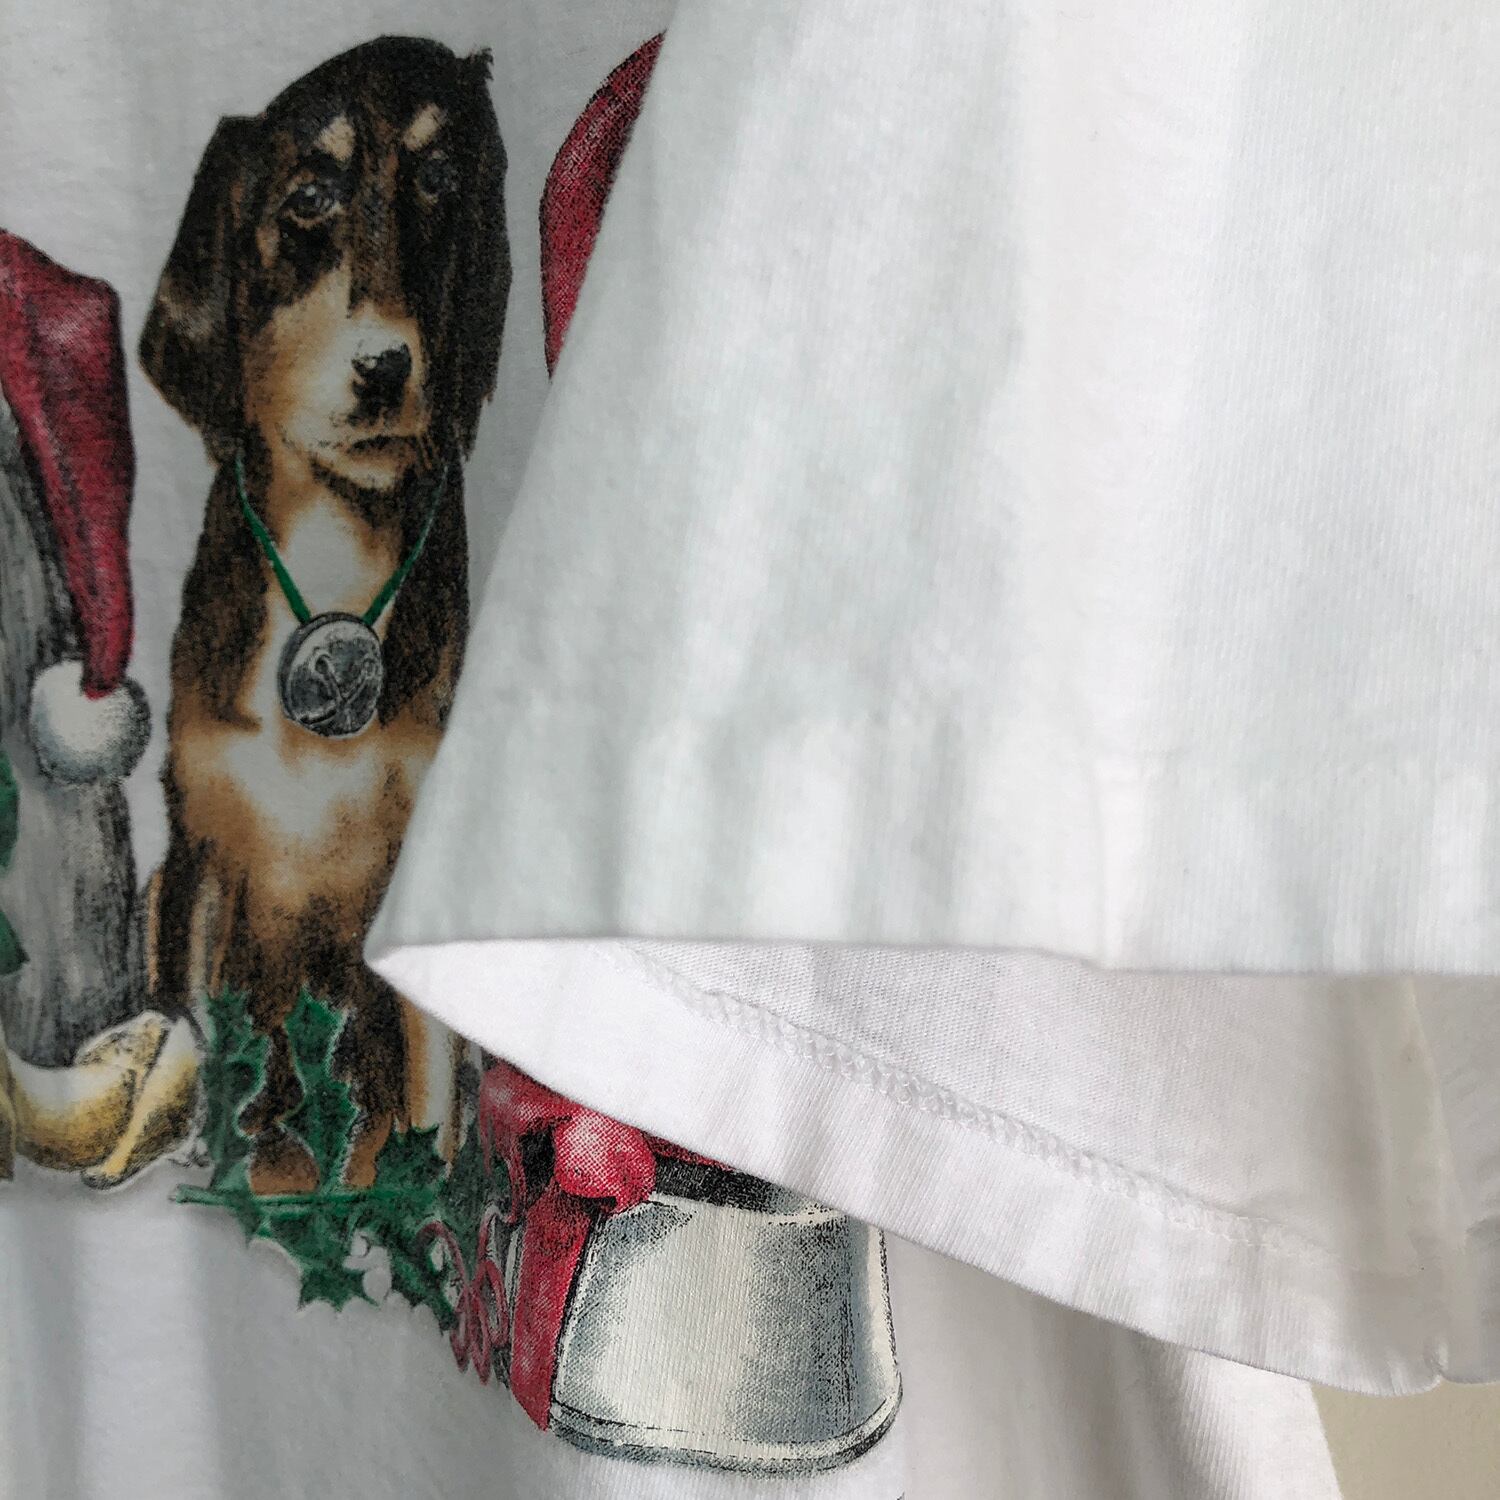 90S USA製 ヴィンテージ オールド 犬 クリスマス ワンピース Tシャツ